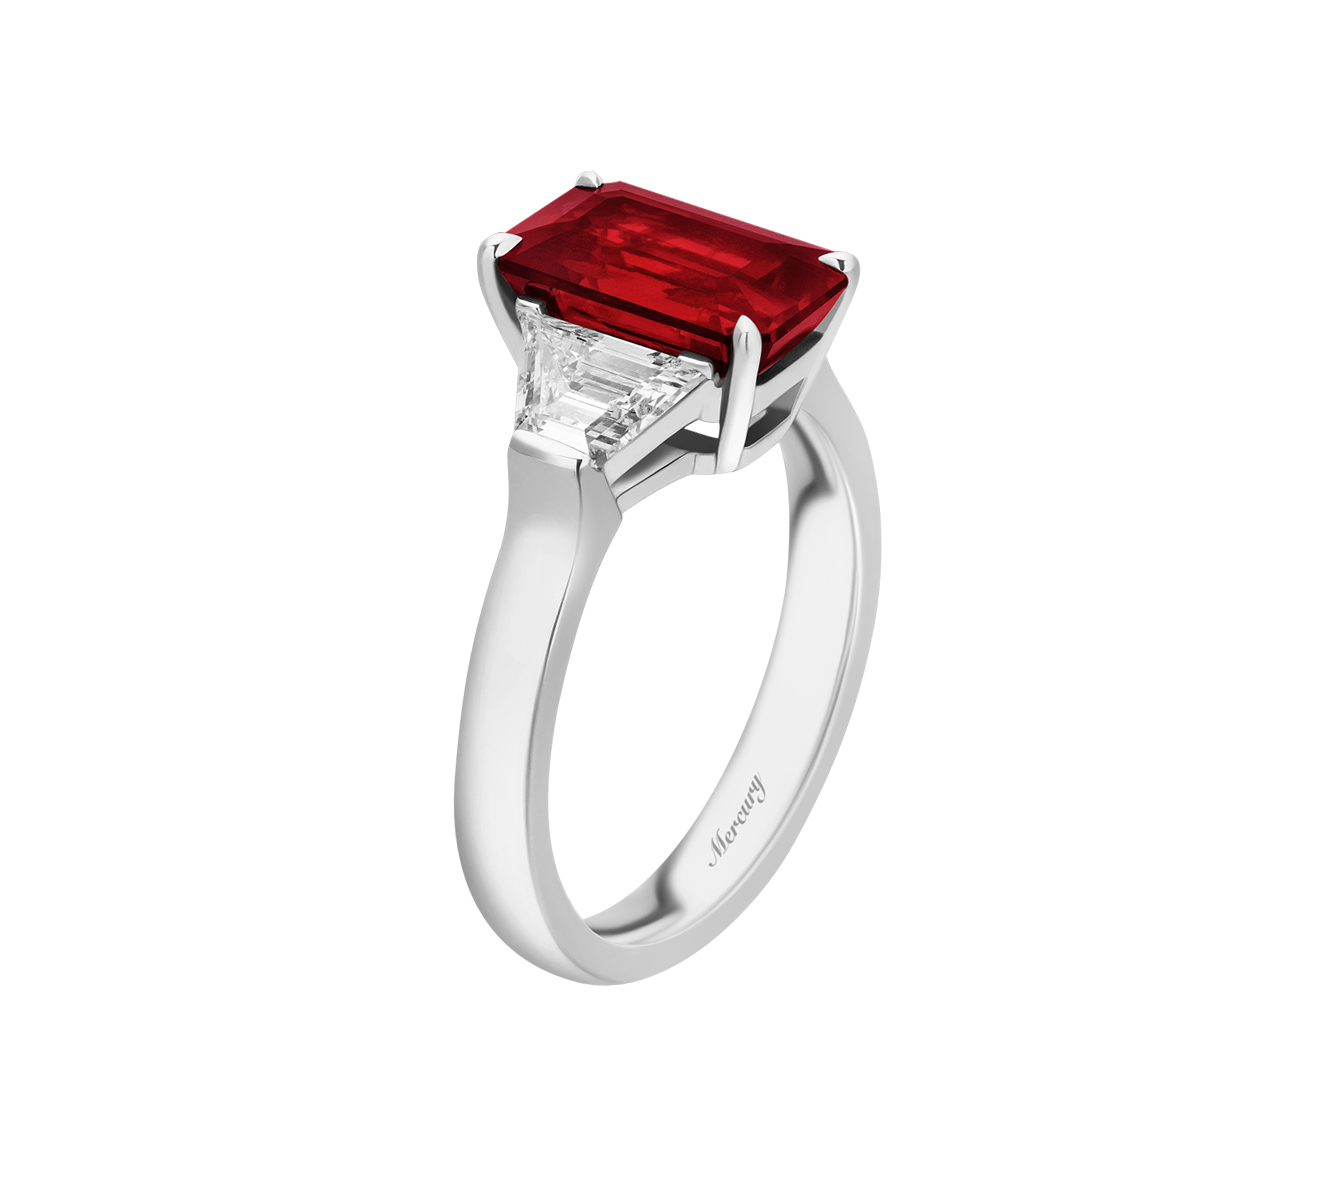 Женские кольца с рубином, купить на официальном сайте Бронницкий Ювелир